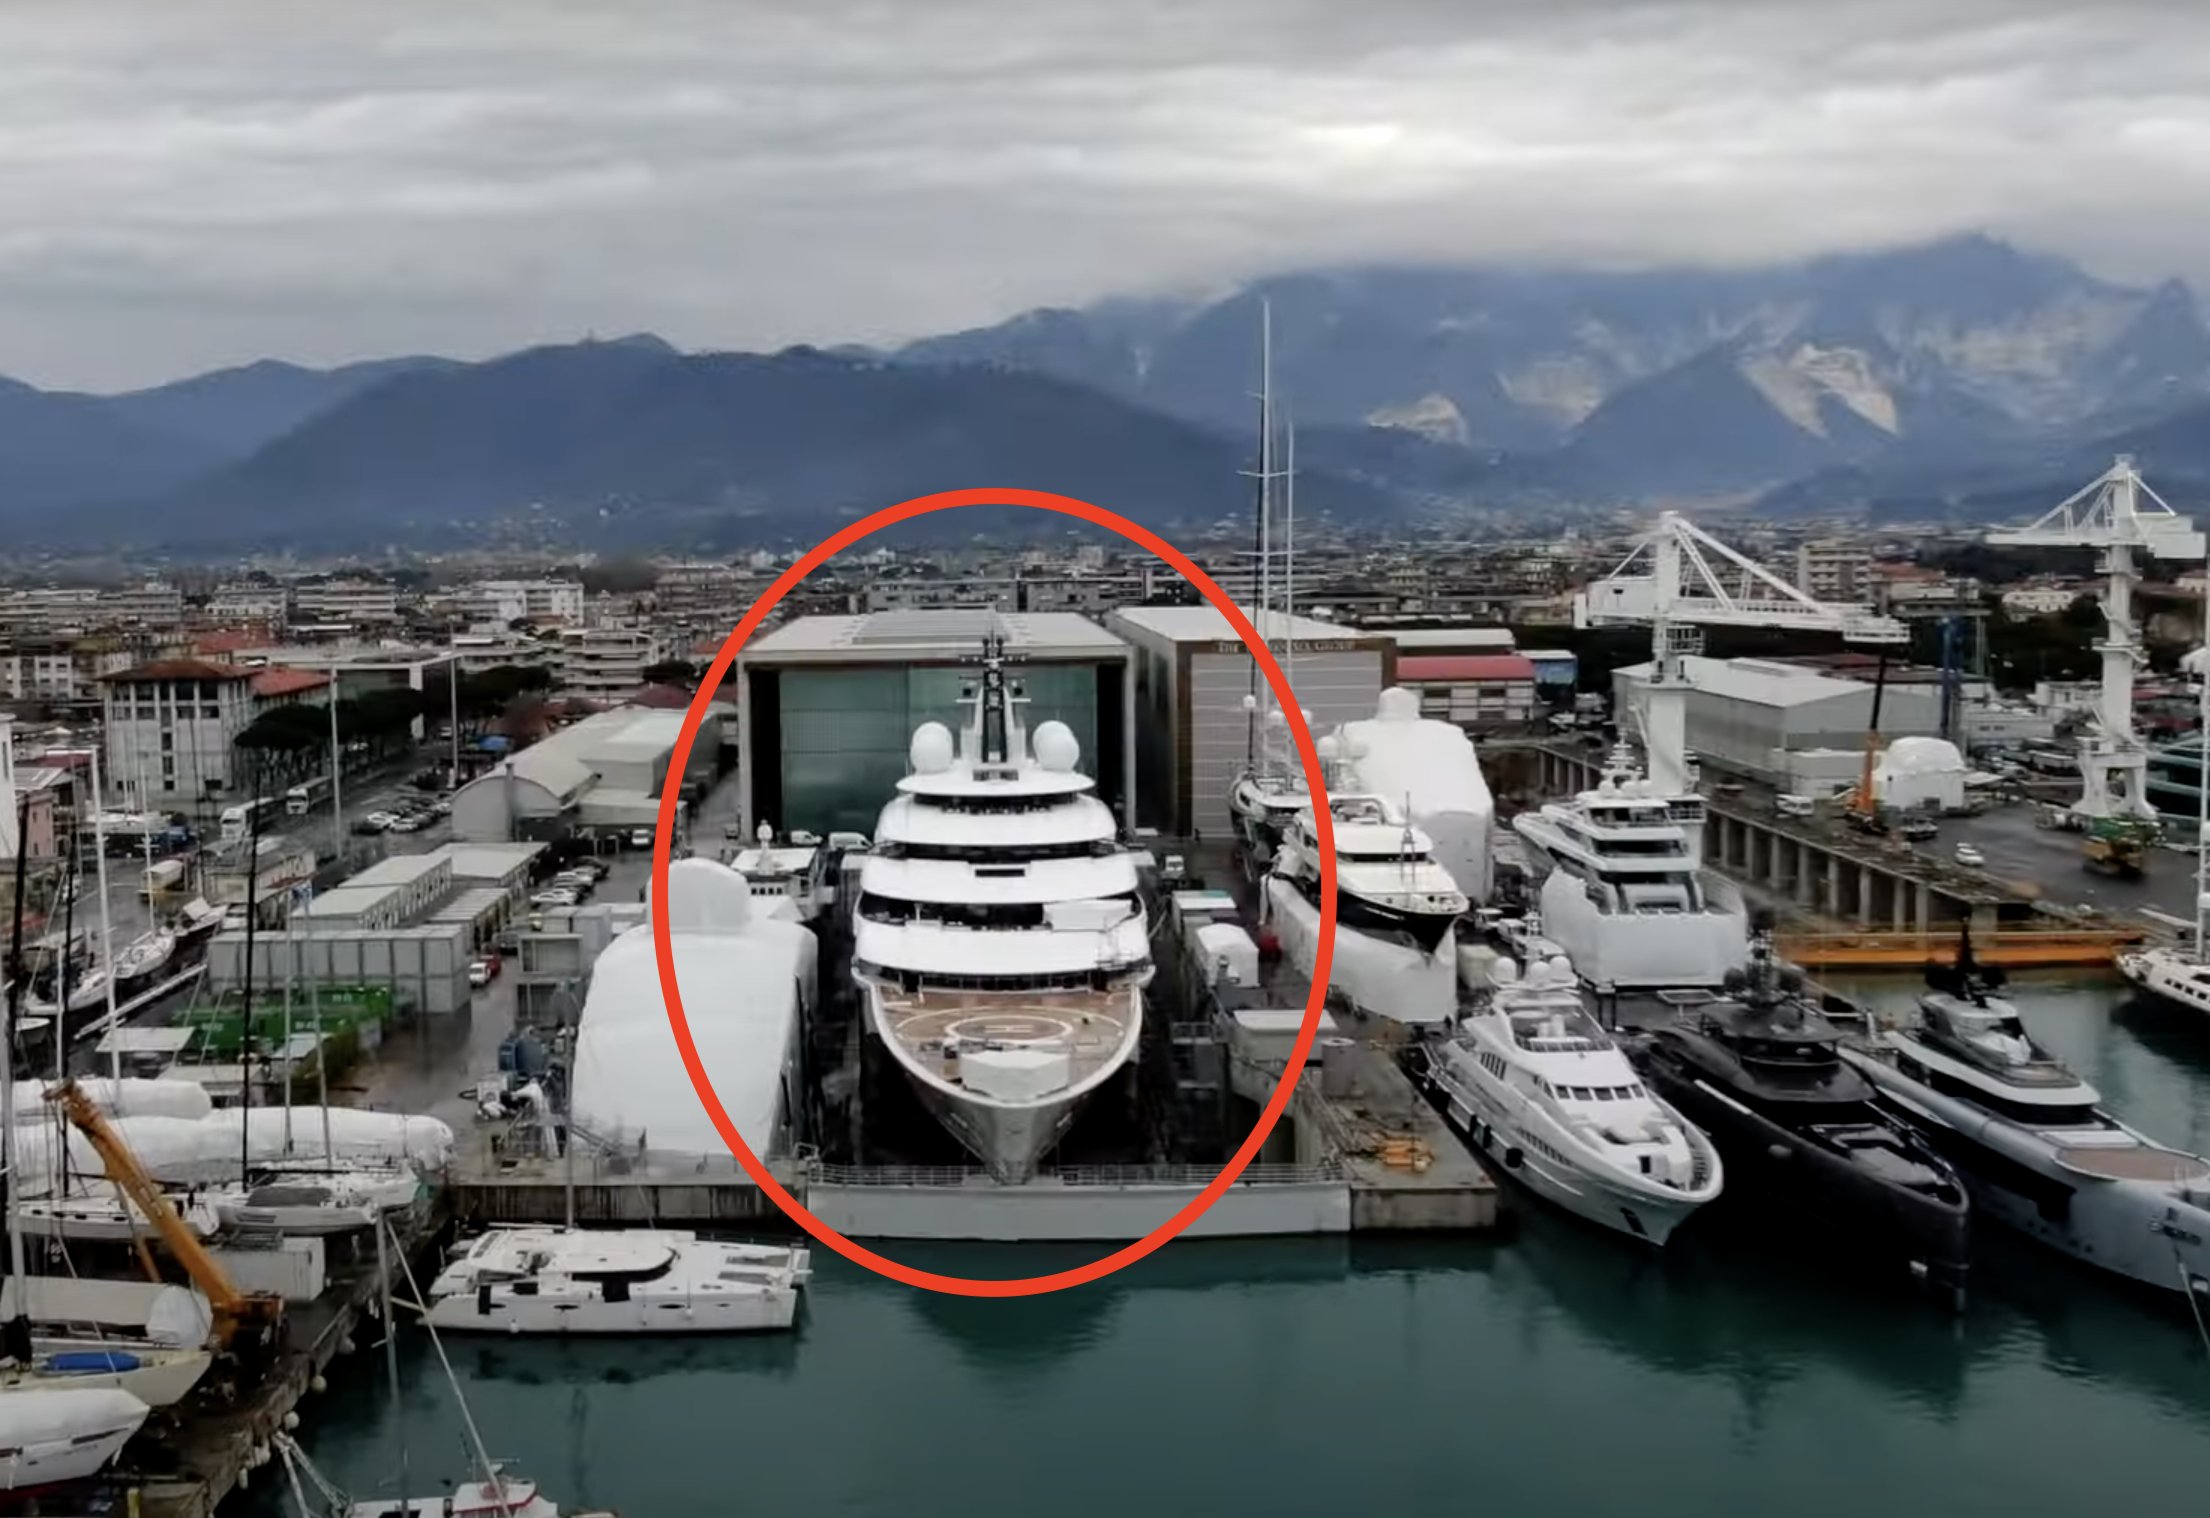 Investigație: Un super-iaht misterios, ancorat în Italia, regiunea Toscana, ar fi al lui Vladimir Putin